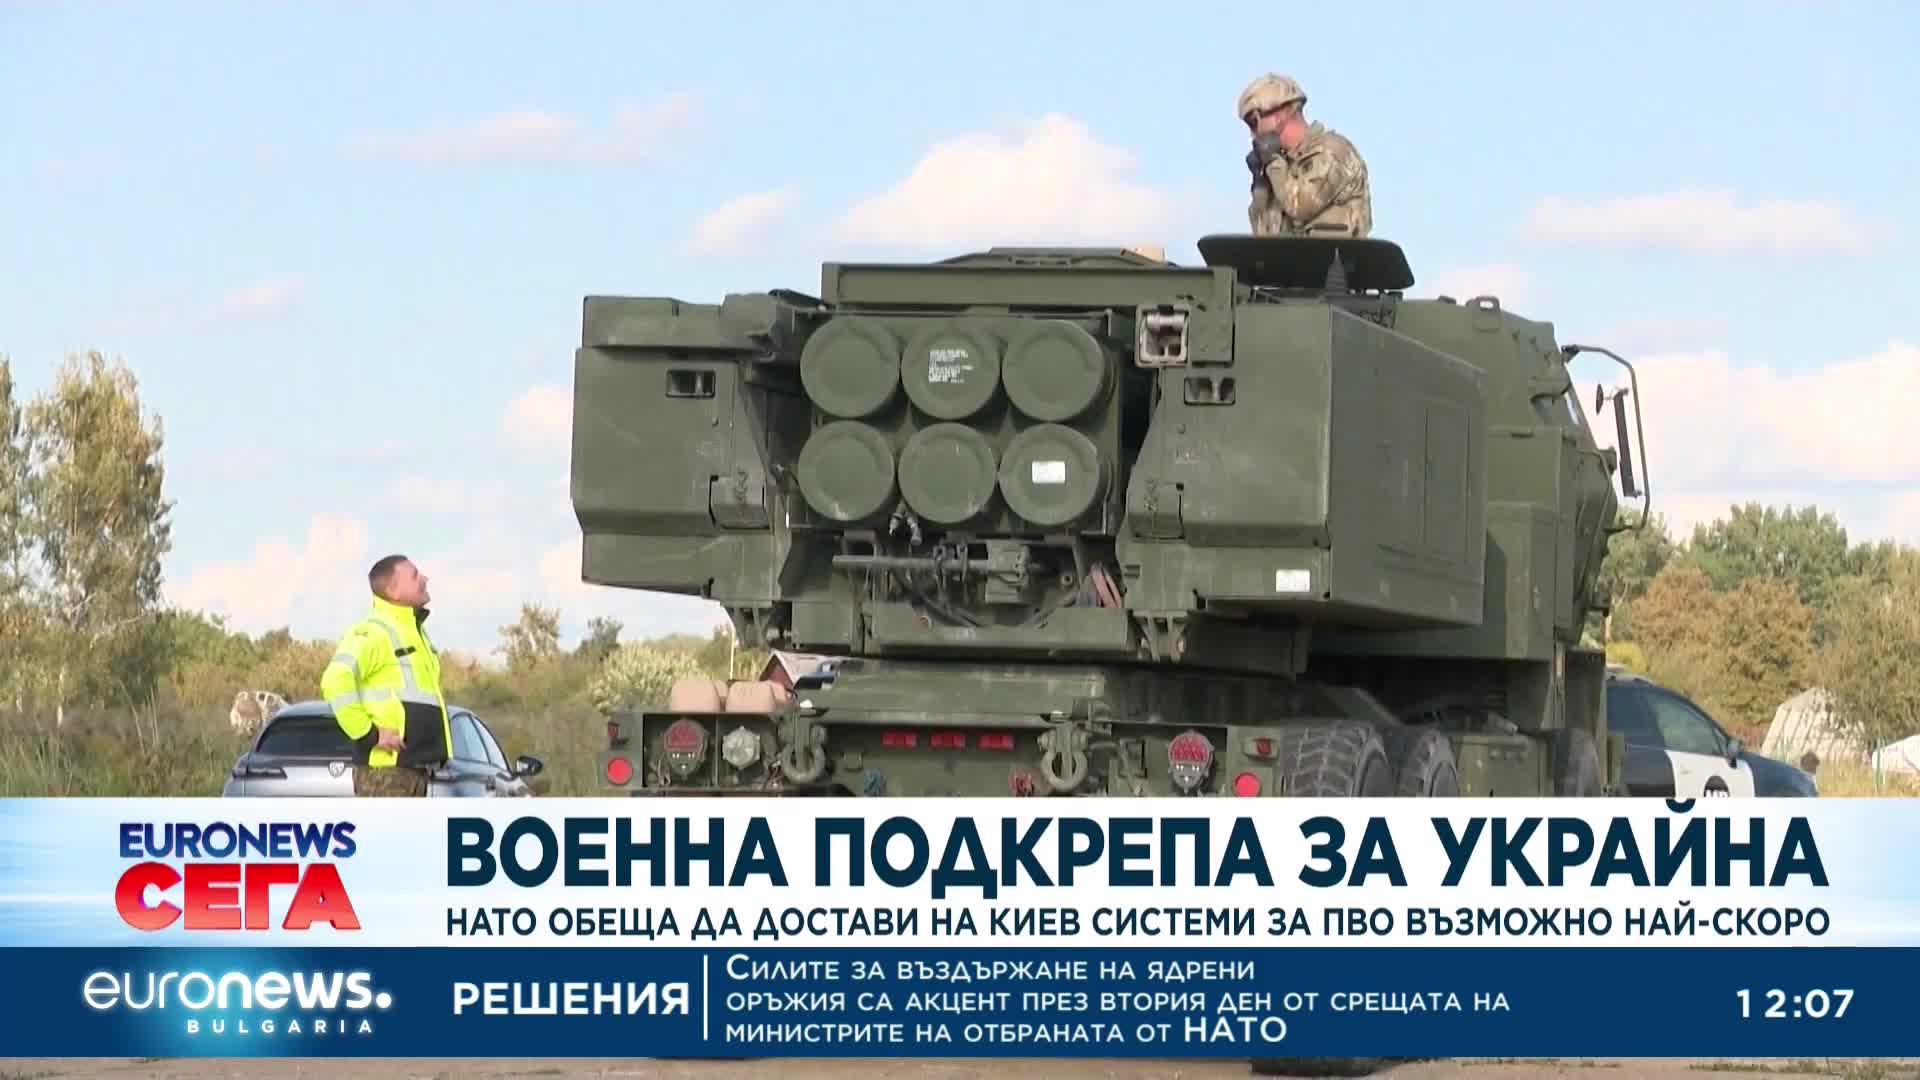 НАТО обеща да достави на Киев системи за ПВО възможно най-скоро